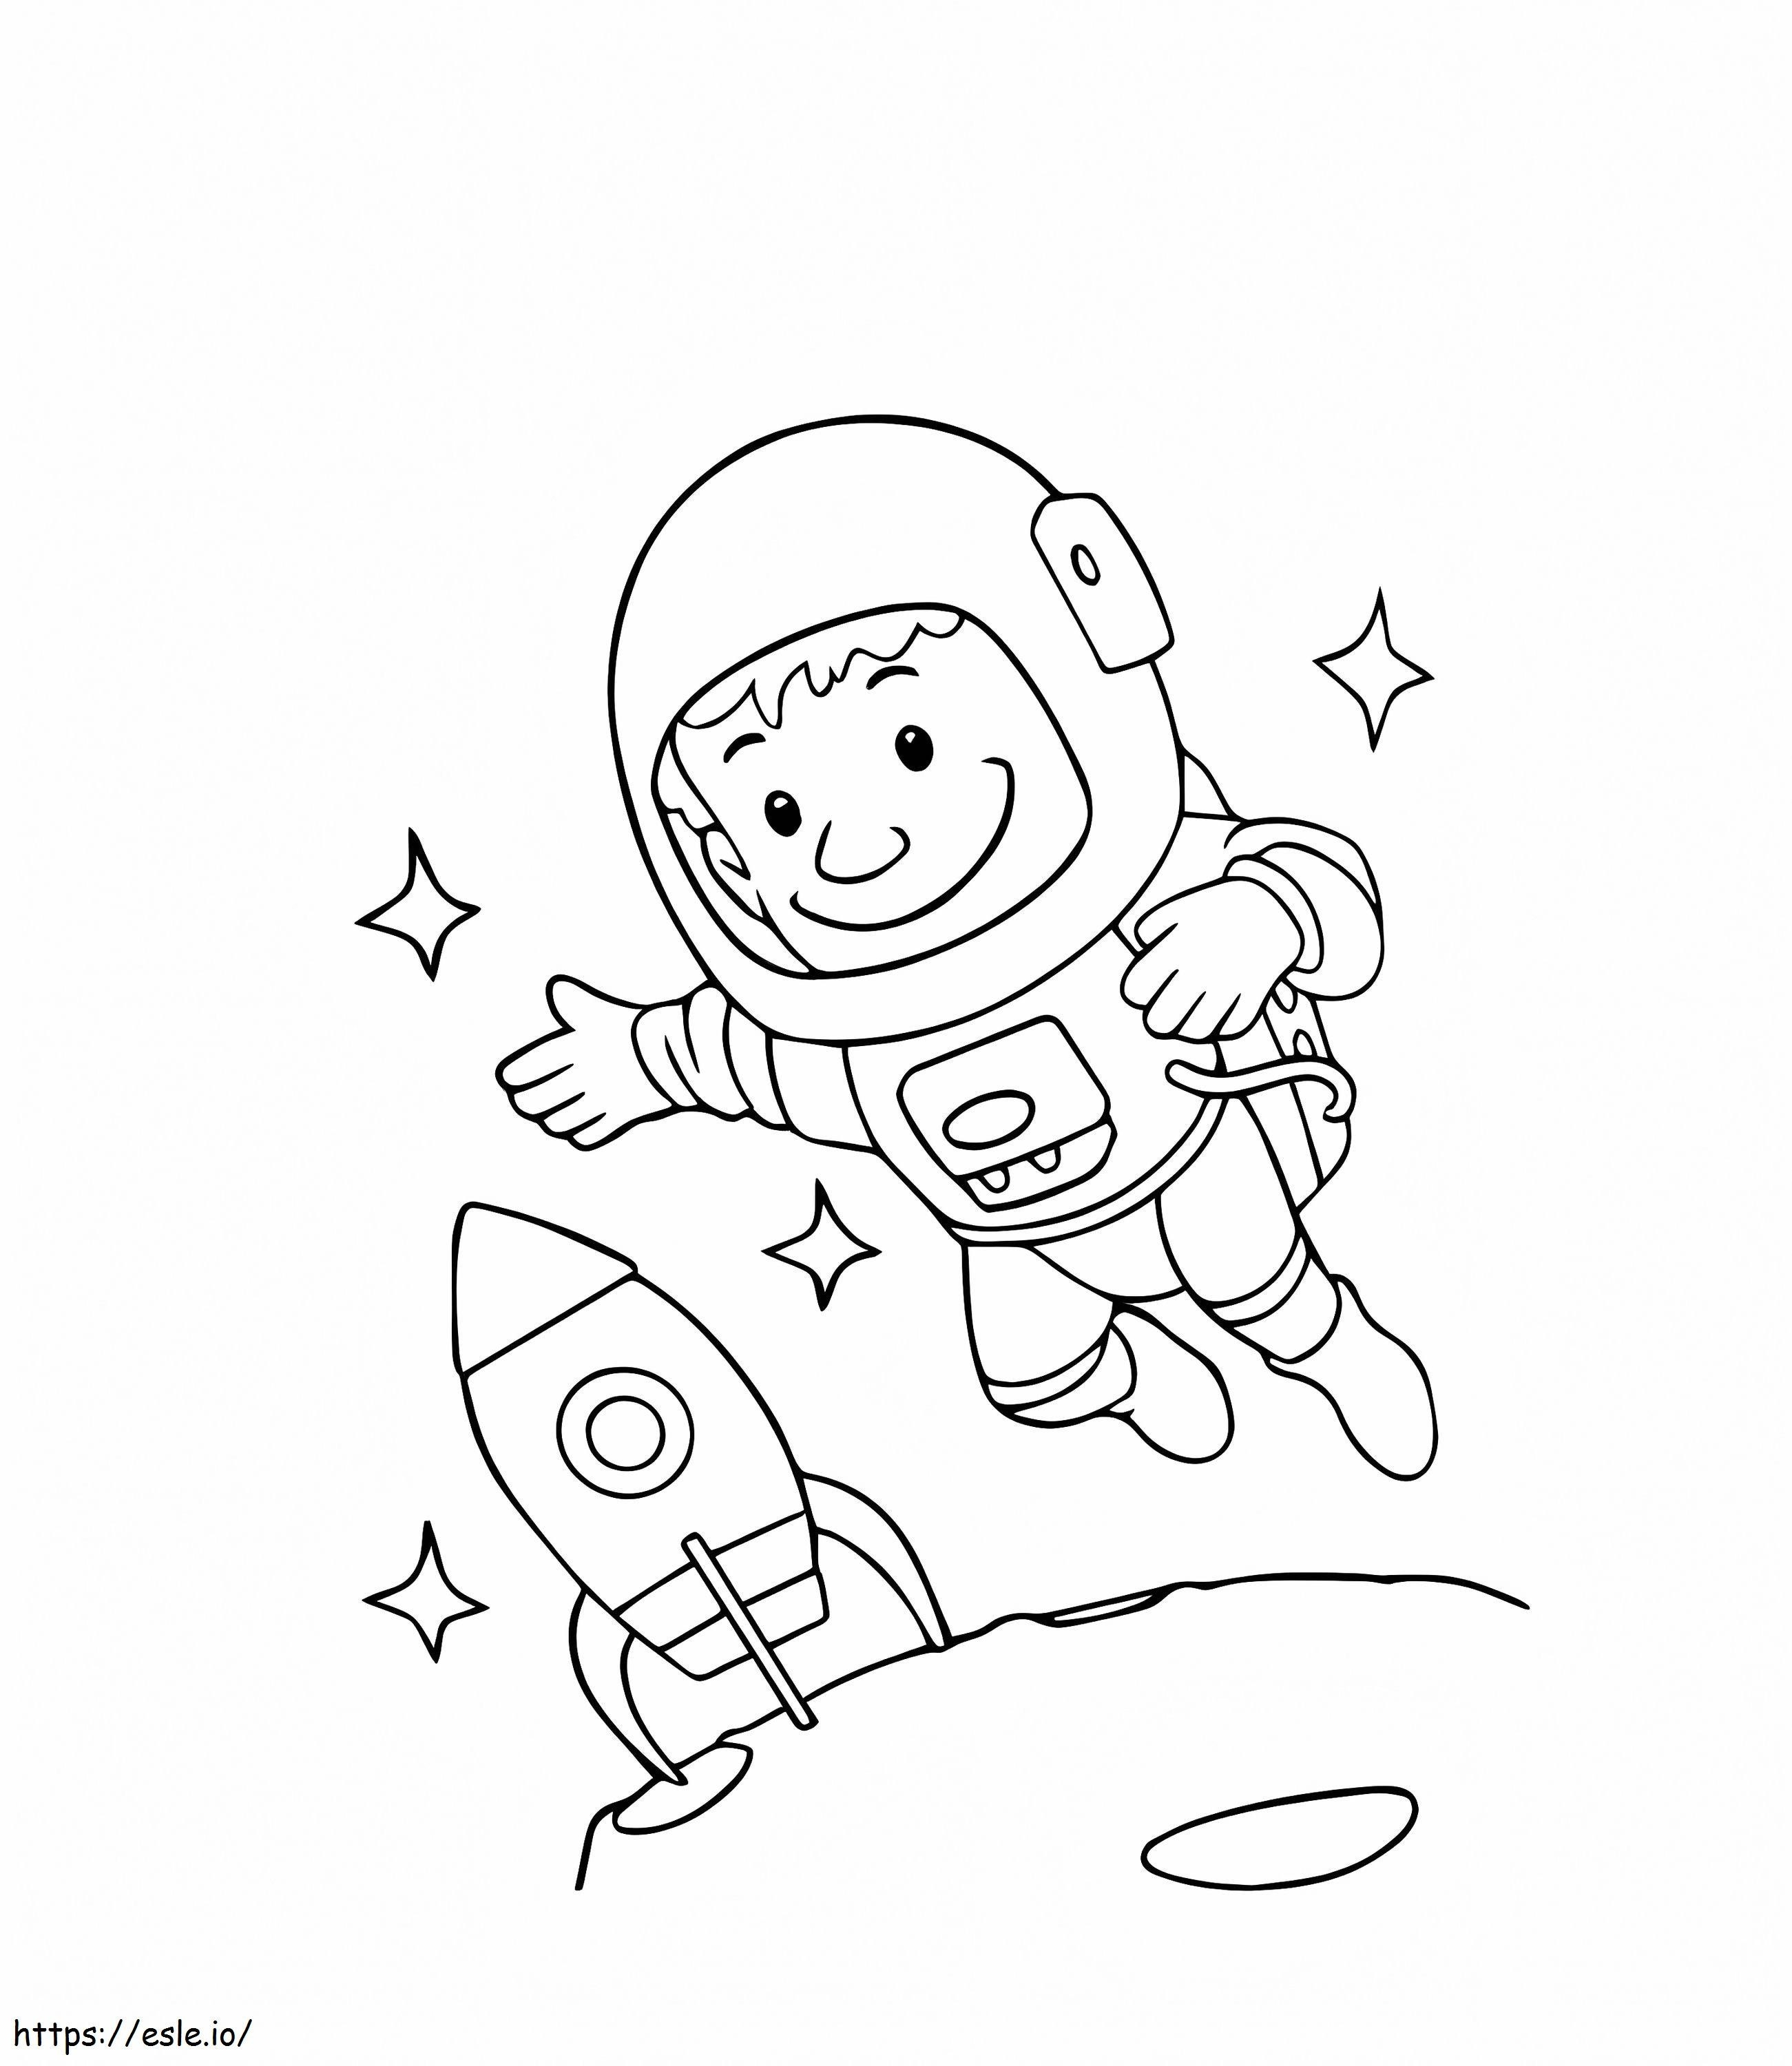 Astronaut und Raumschiff ausmalbilder